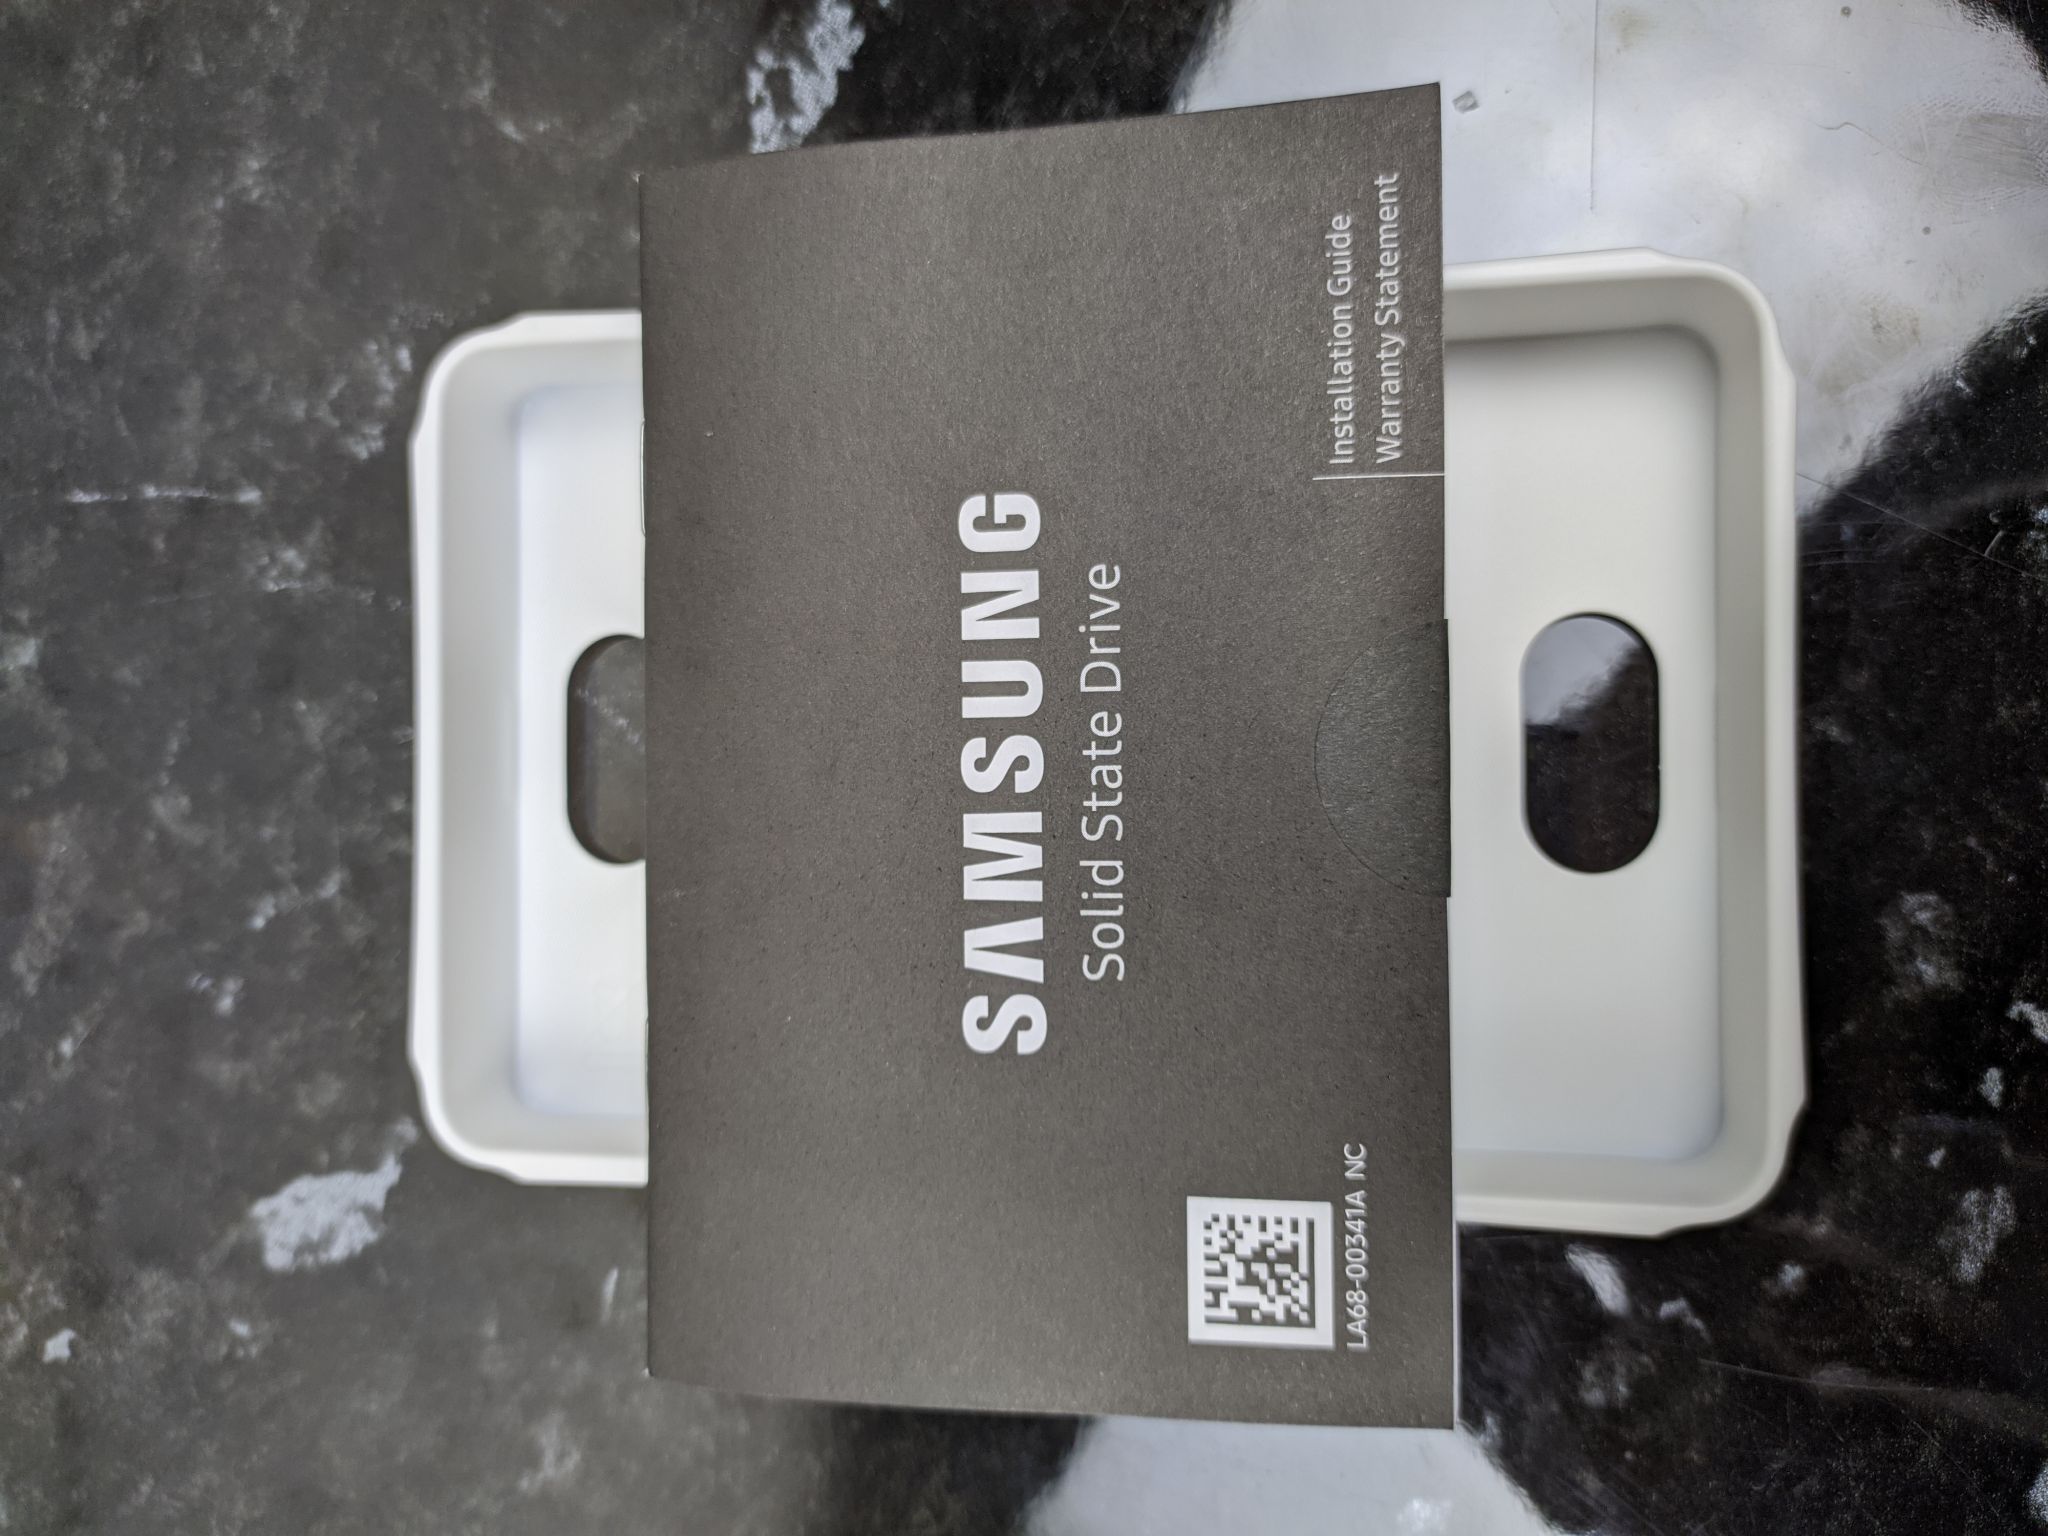 Ssd 980 mz v8v1t0bw. Samsung 980 MZ v8v500bw 500гб. Samsung 980 [MZ-v8v1t0bw] ыв. SSD диск Samsung 980. Samsung m2 980.